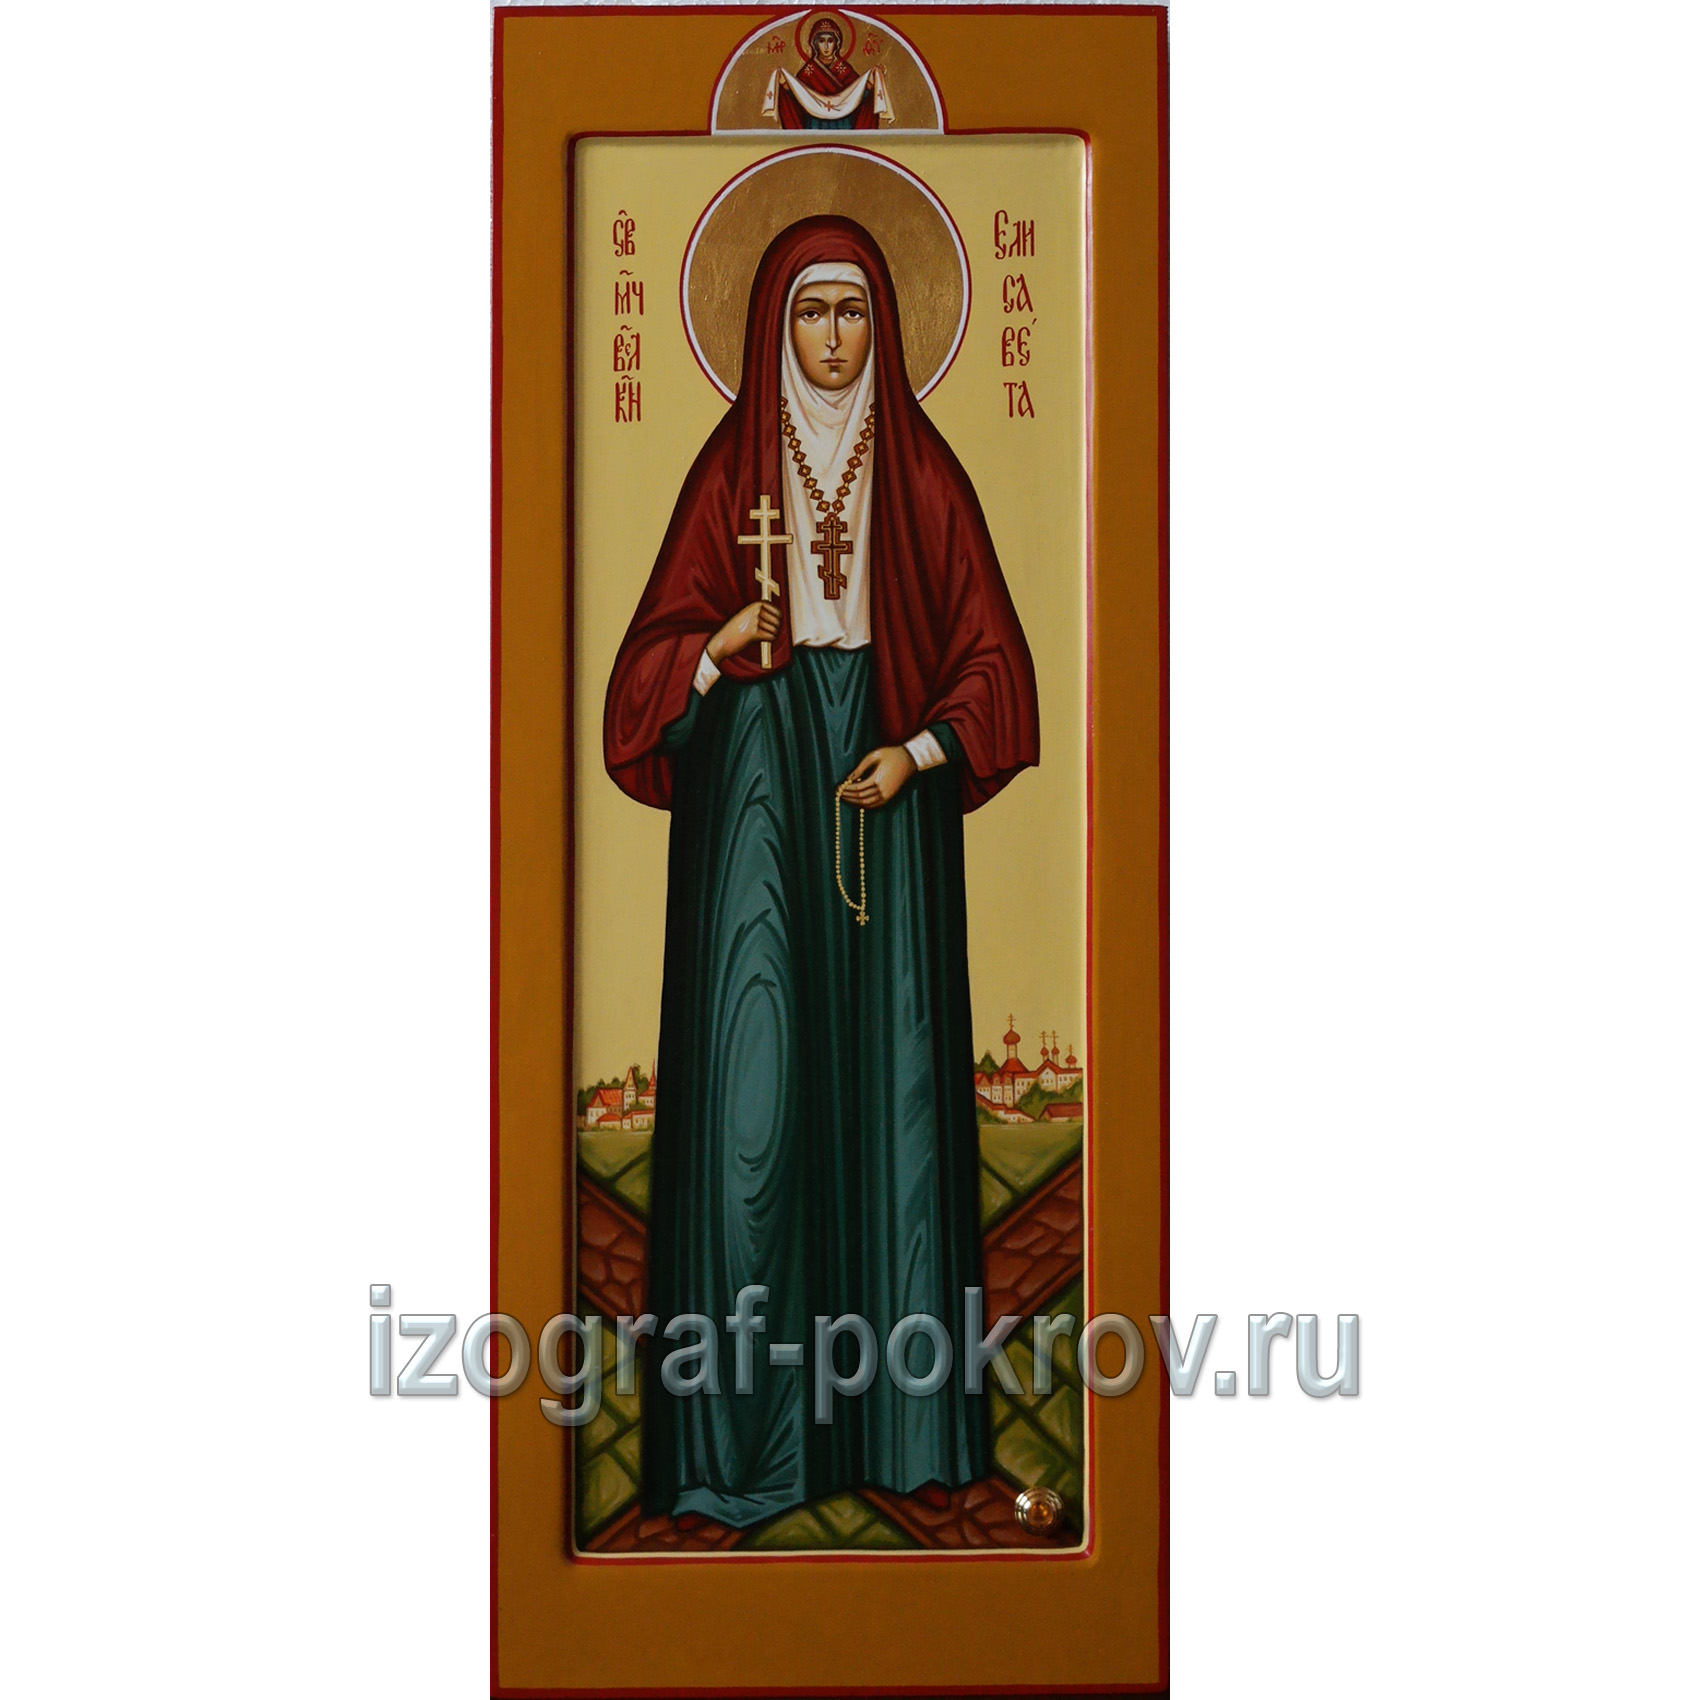 Мерная икона Елисавета Федоровна Алапаевская заказ иконы в храме